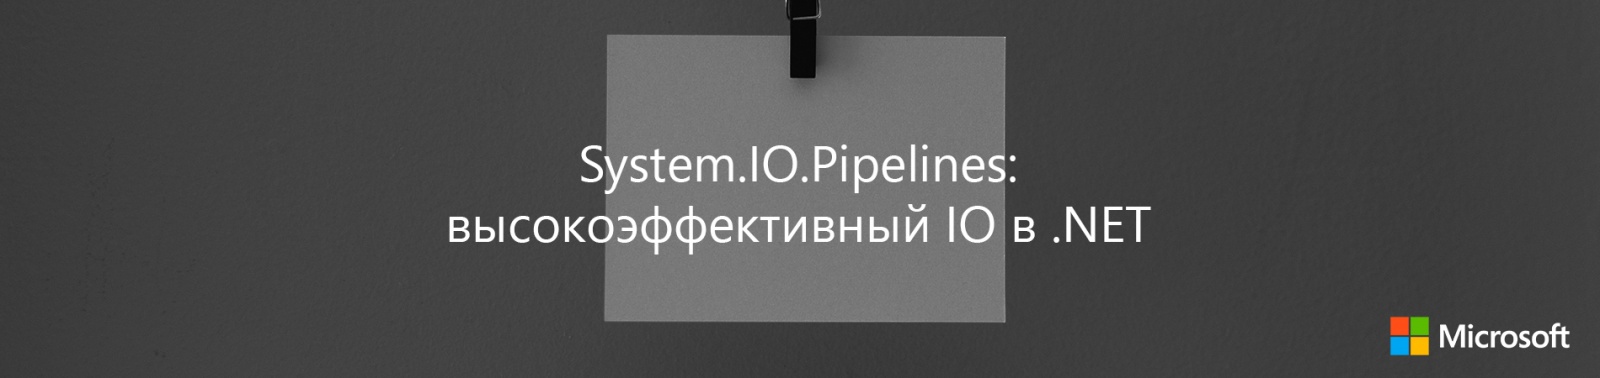 System.IO.Pipelines: высокоэффективный IO в .NET - 1